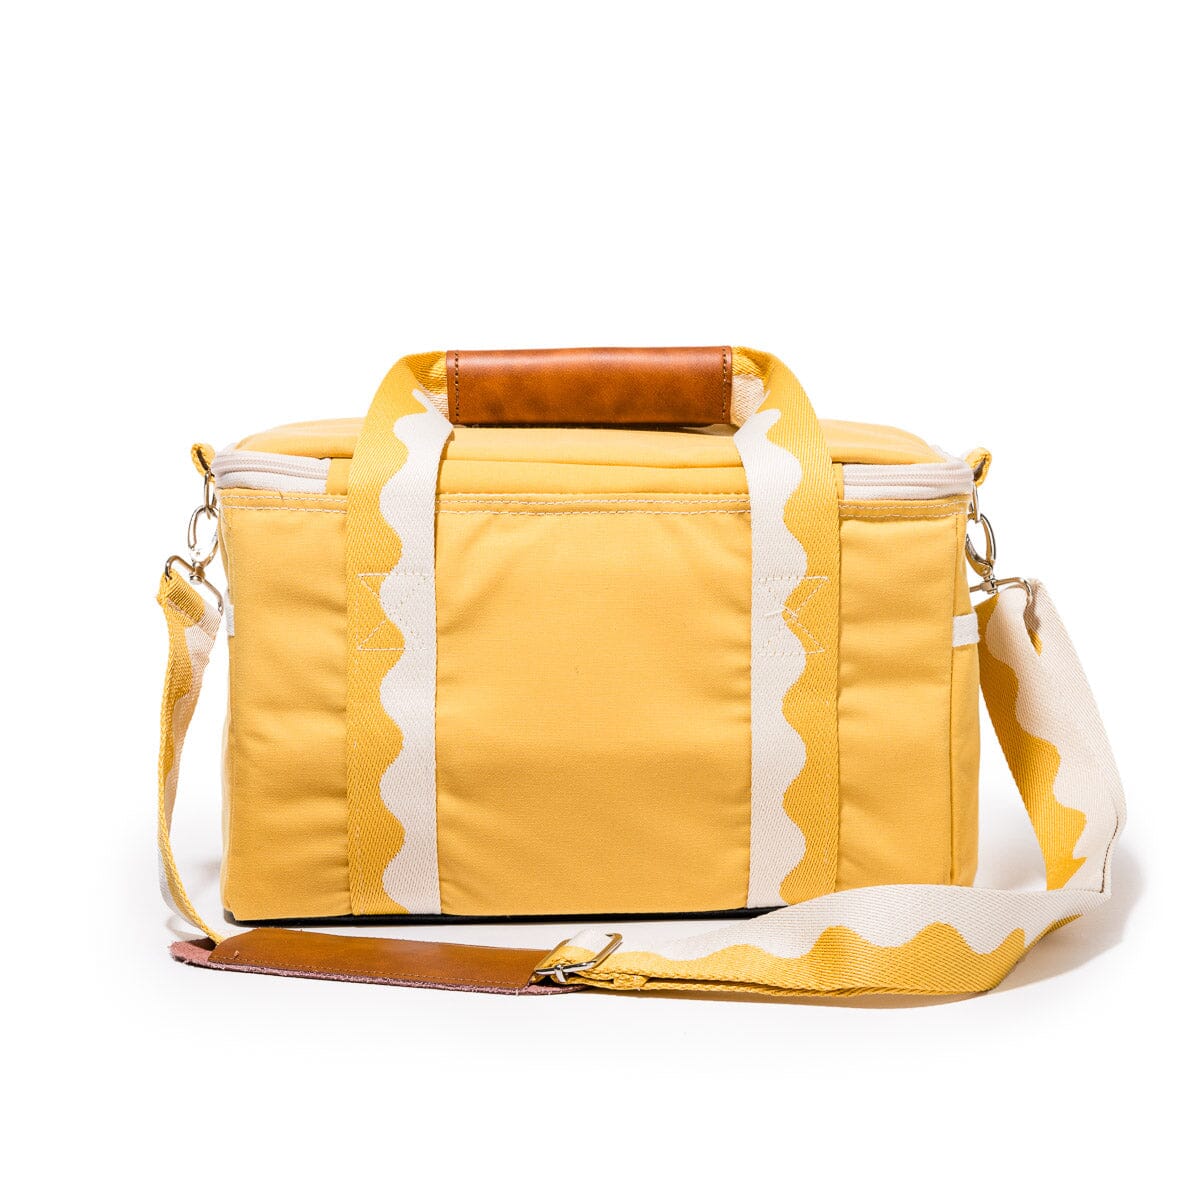 The Premium Cooler Bag - Rivie Mimosa Premium Cooler Bag Business & Pleasure Co Aus 